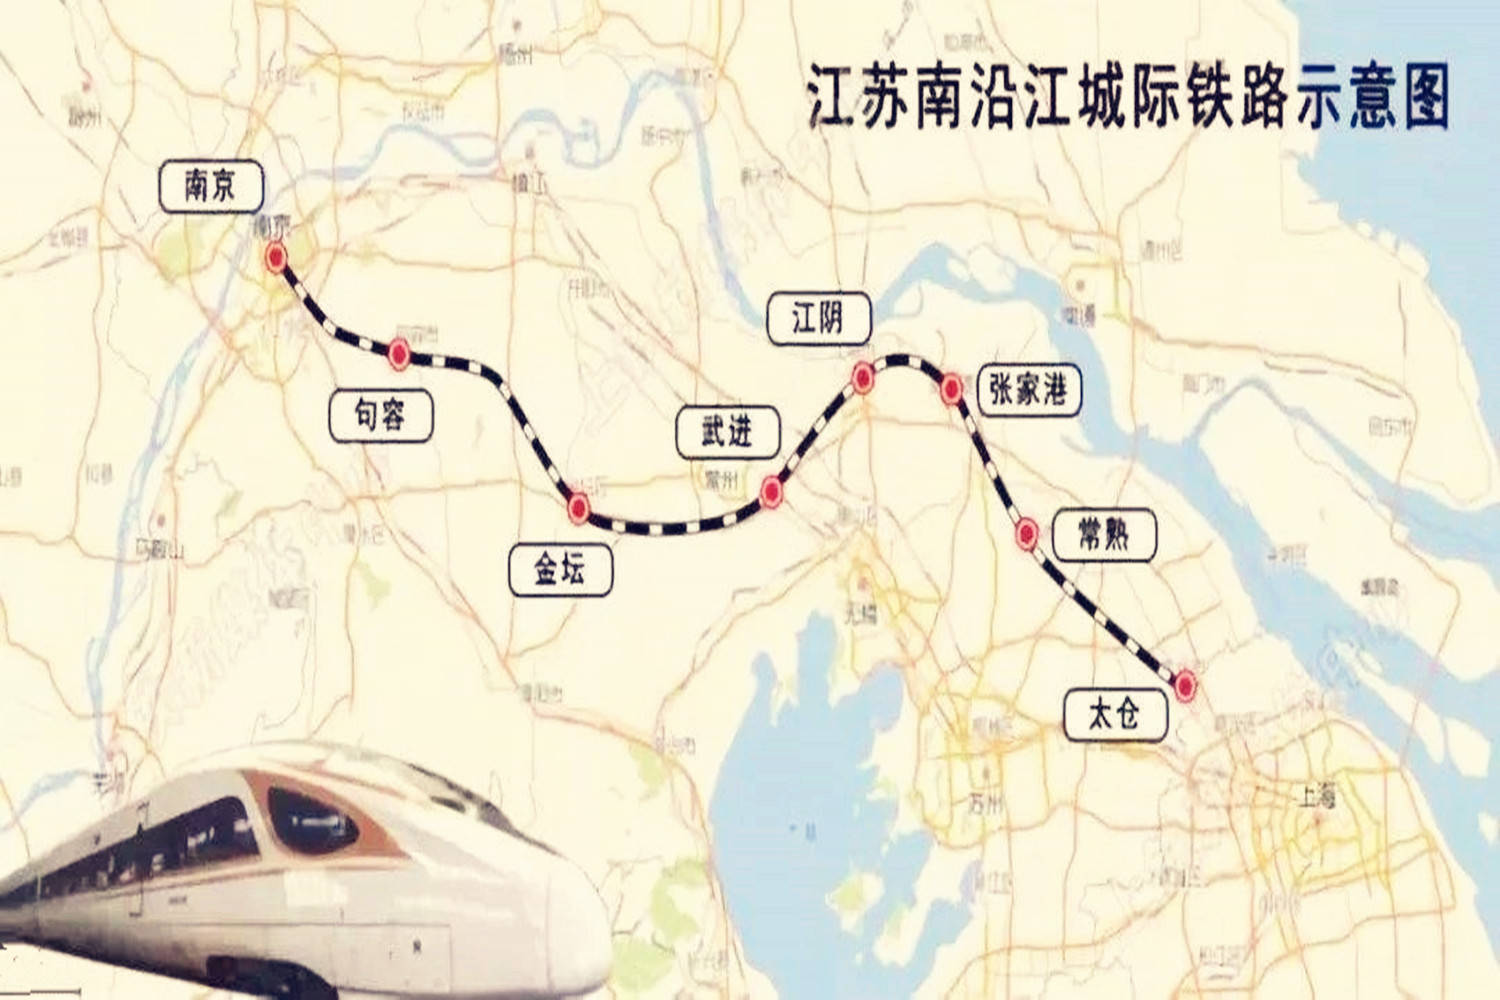 江苏规划建一座高铁站,采用骑跨式站房设计,南沿江高铁将经过